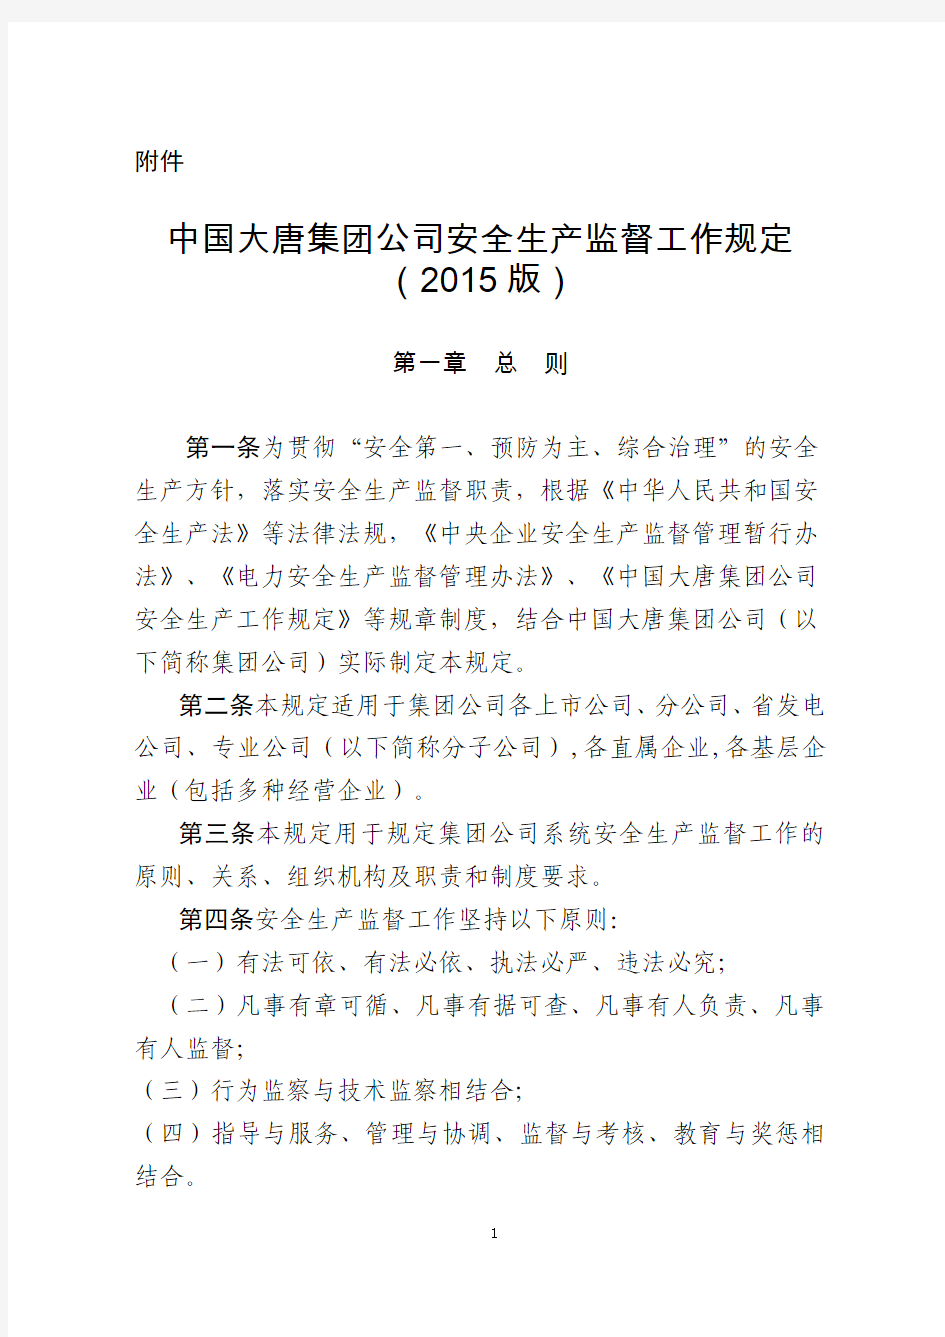 中国大唐集团公司安全生产监督工作规定